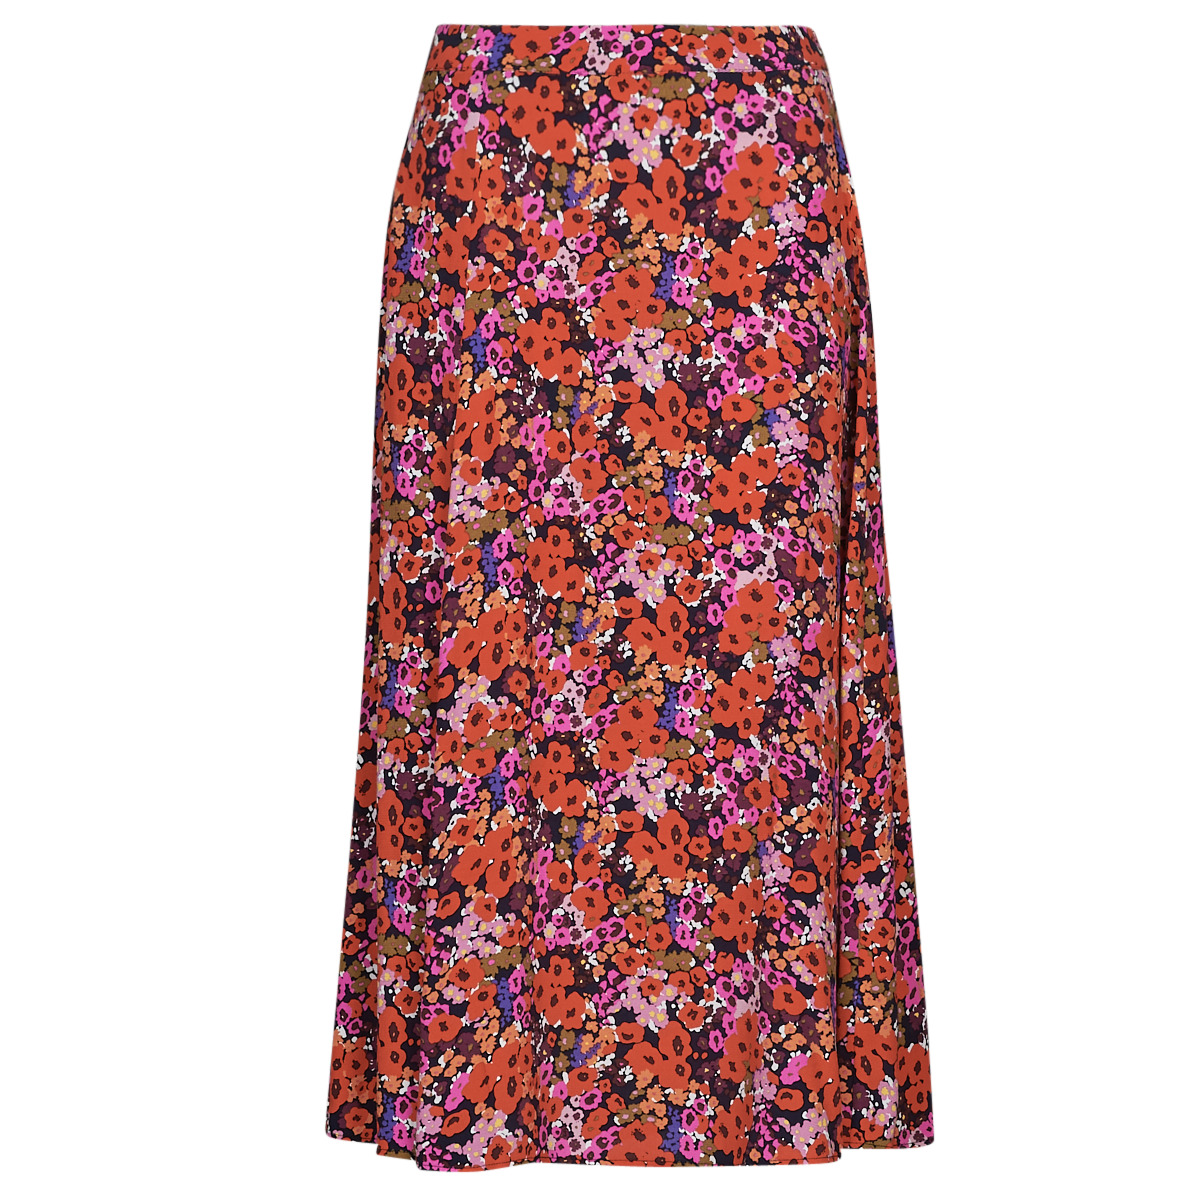 Κοντές Φούστες Esprit skirt aop